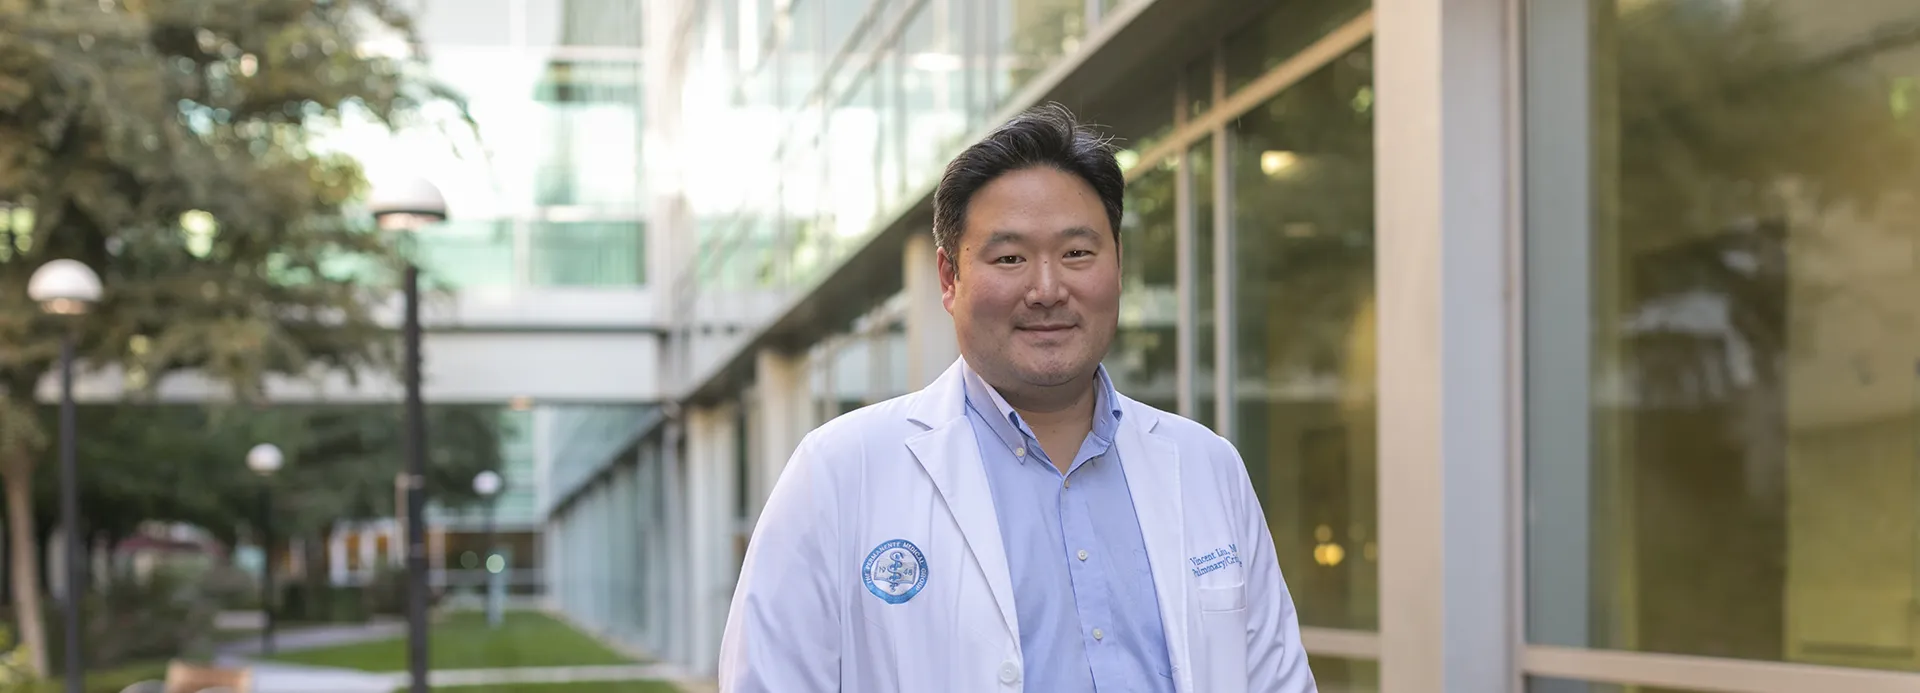 Dr. Vincent Liu